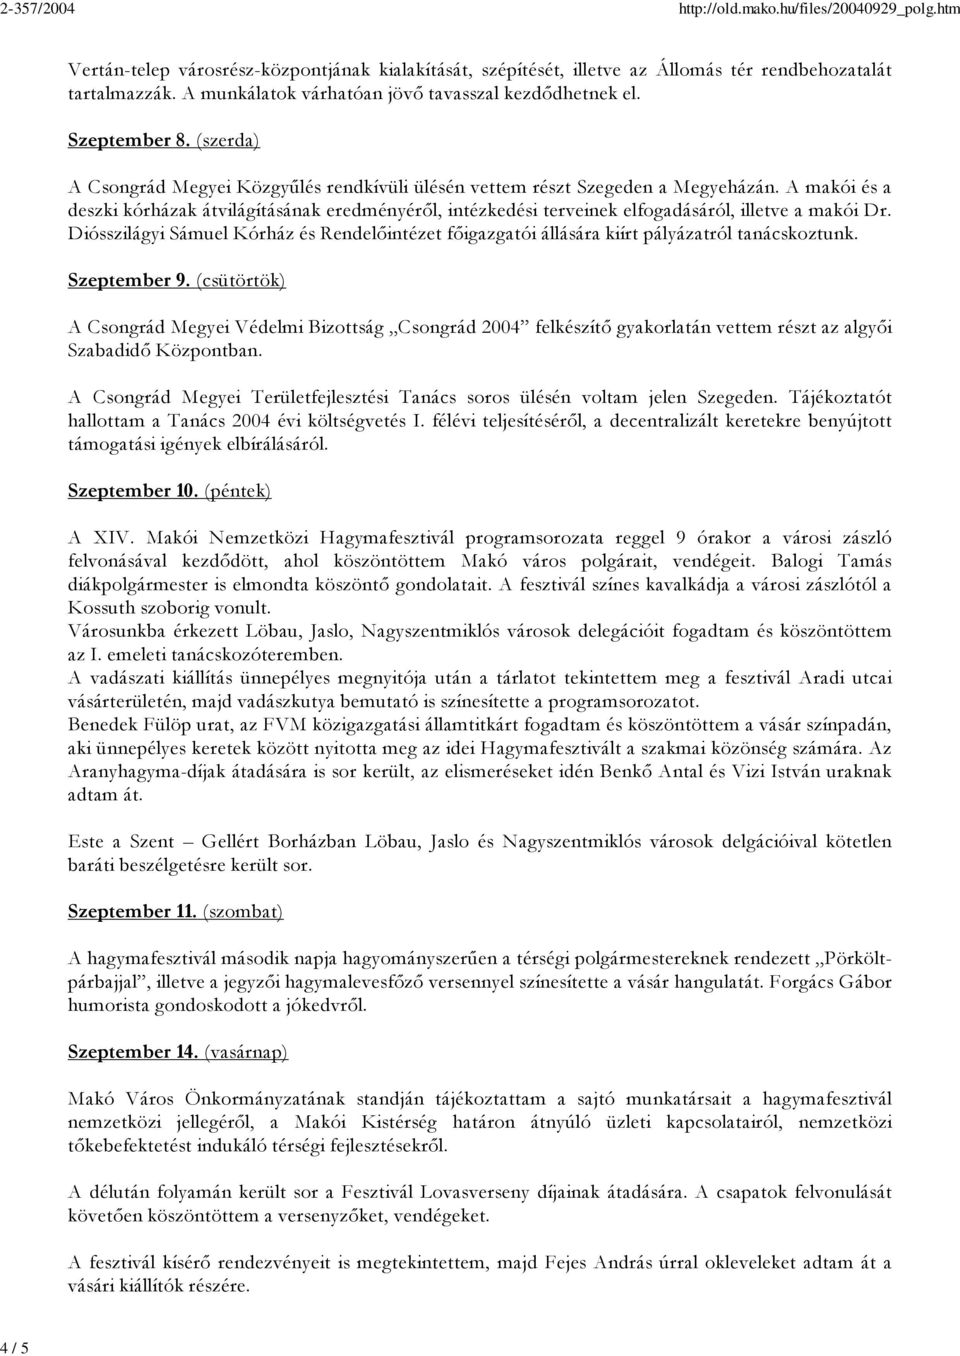 A makói és a deszki kórházak átvilágításának eredményéről, intézkedési terveinek elfogadásáról, illetve a makói Dr.